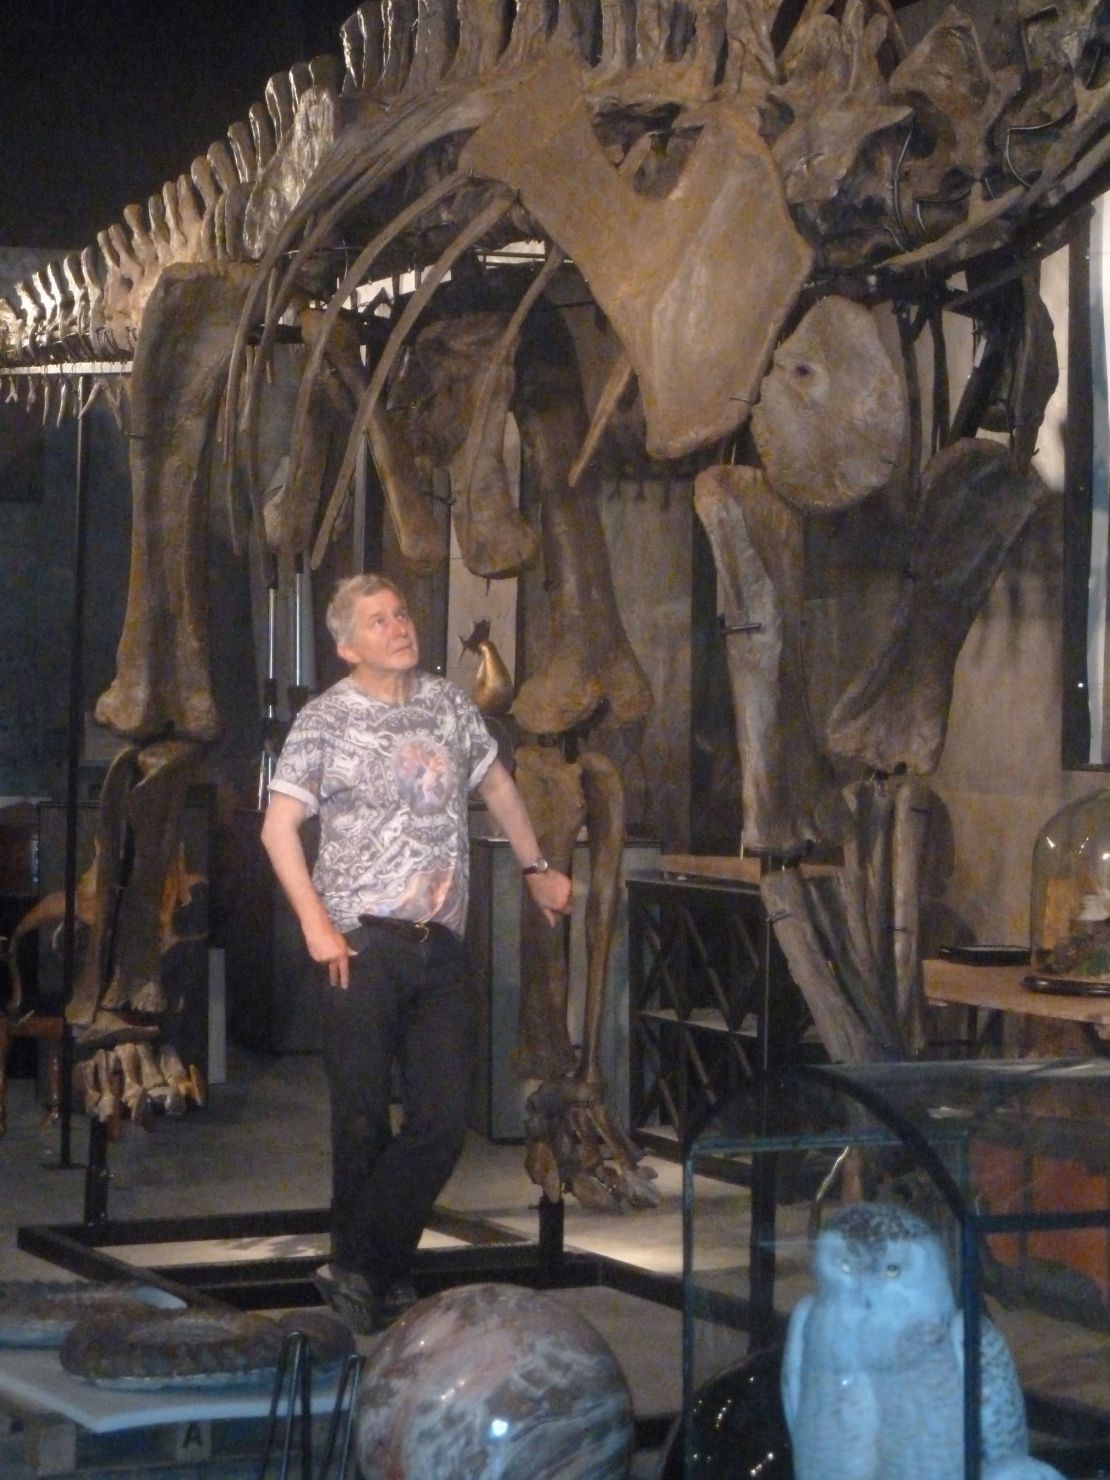 Curator Errol Fuller with the Diplodocus longus skeleton.